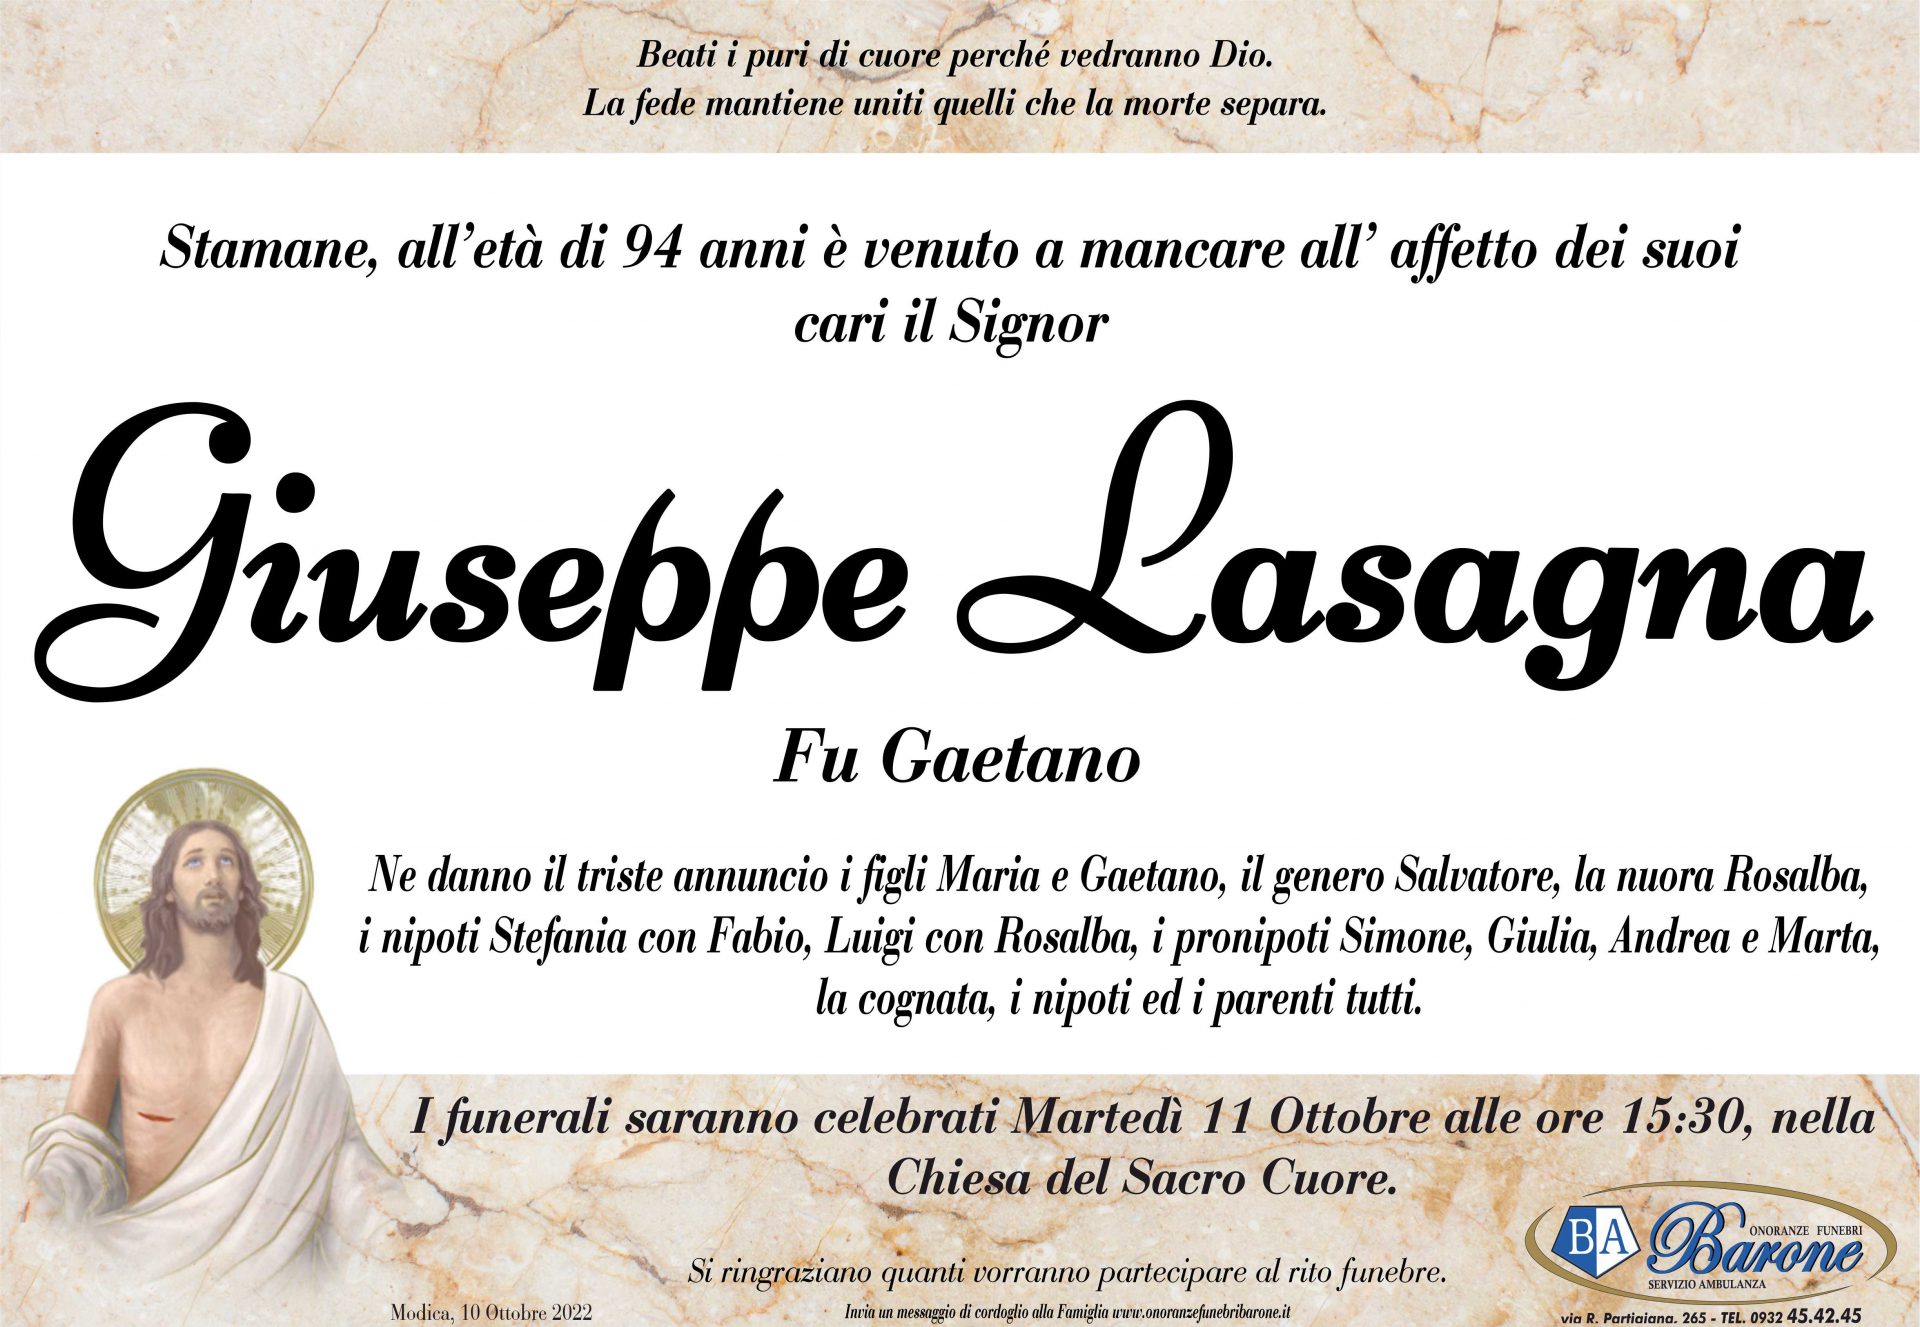 Giuseppe Lasagna